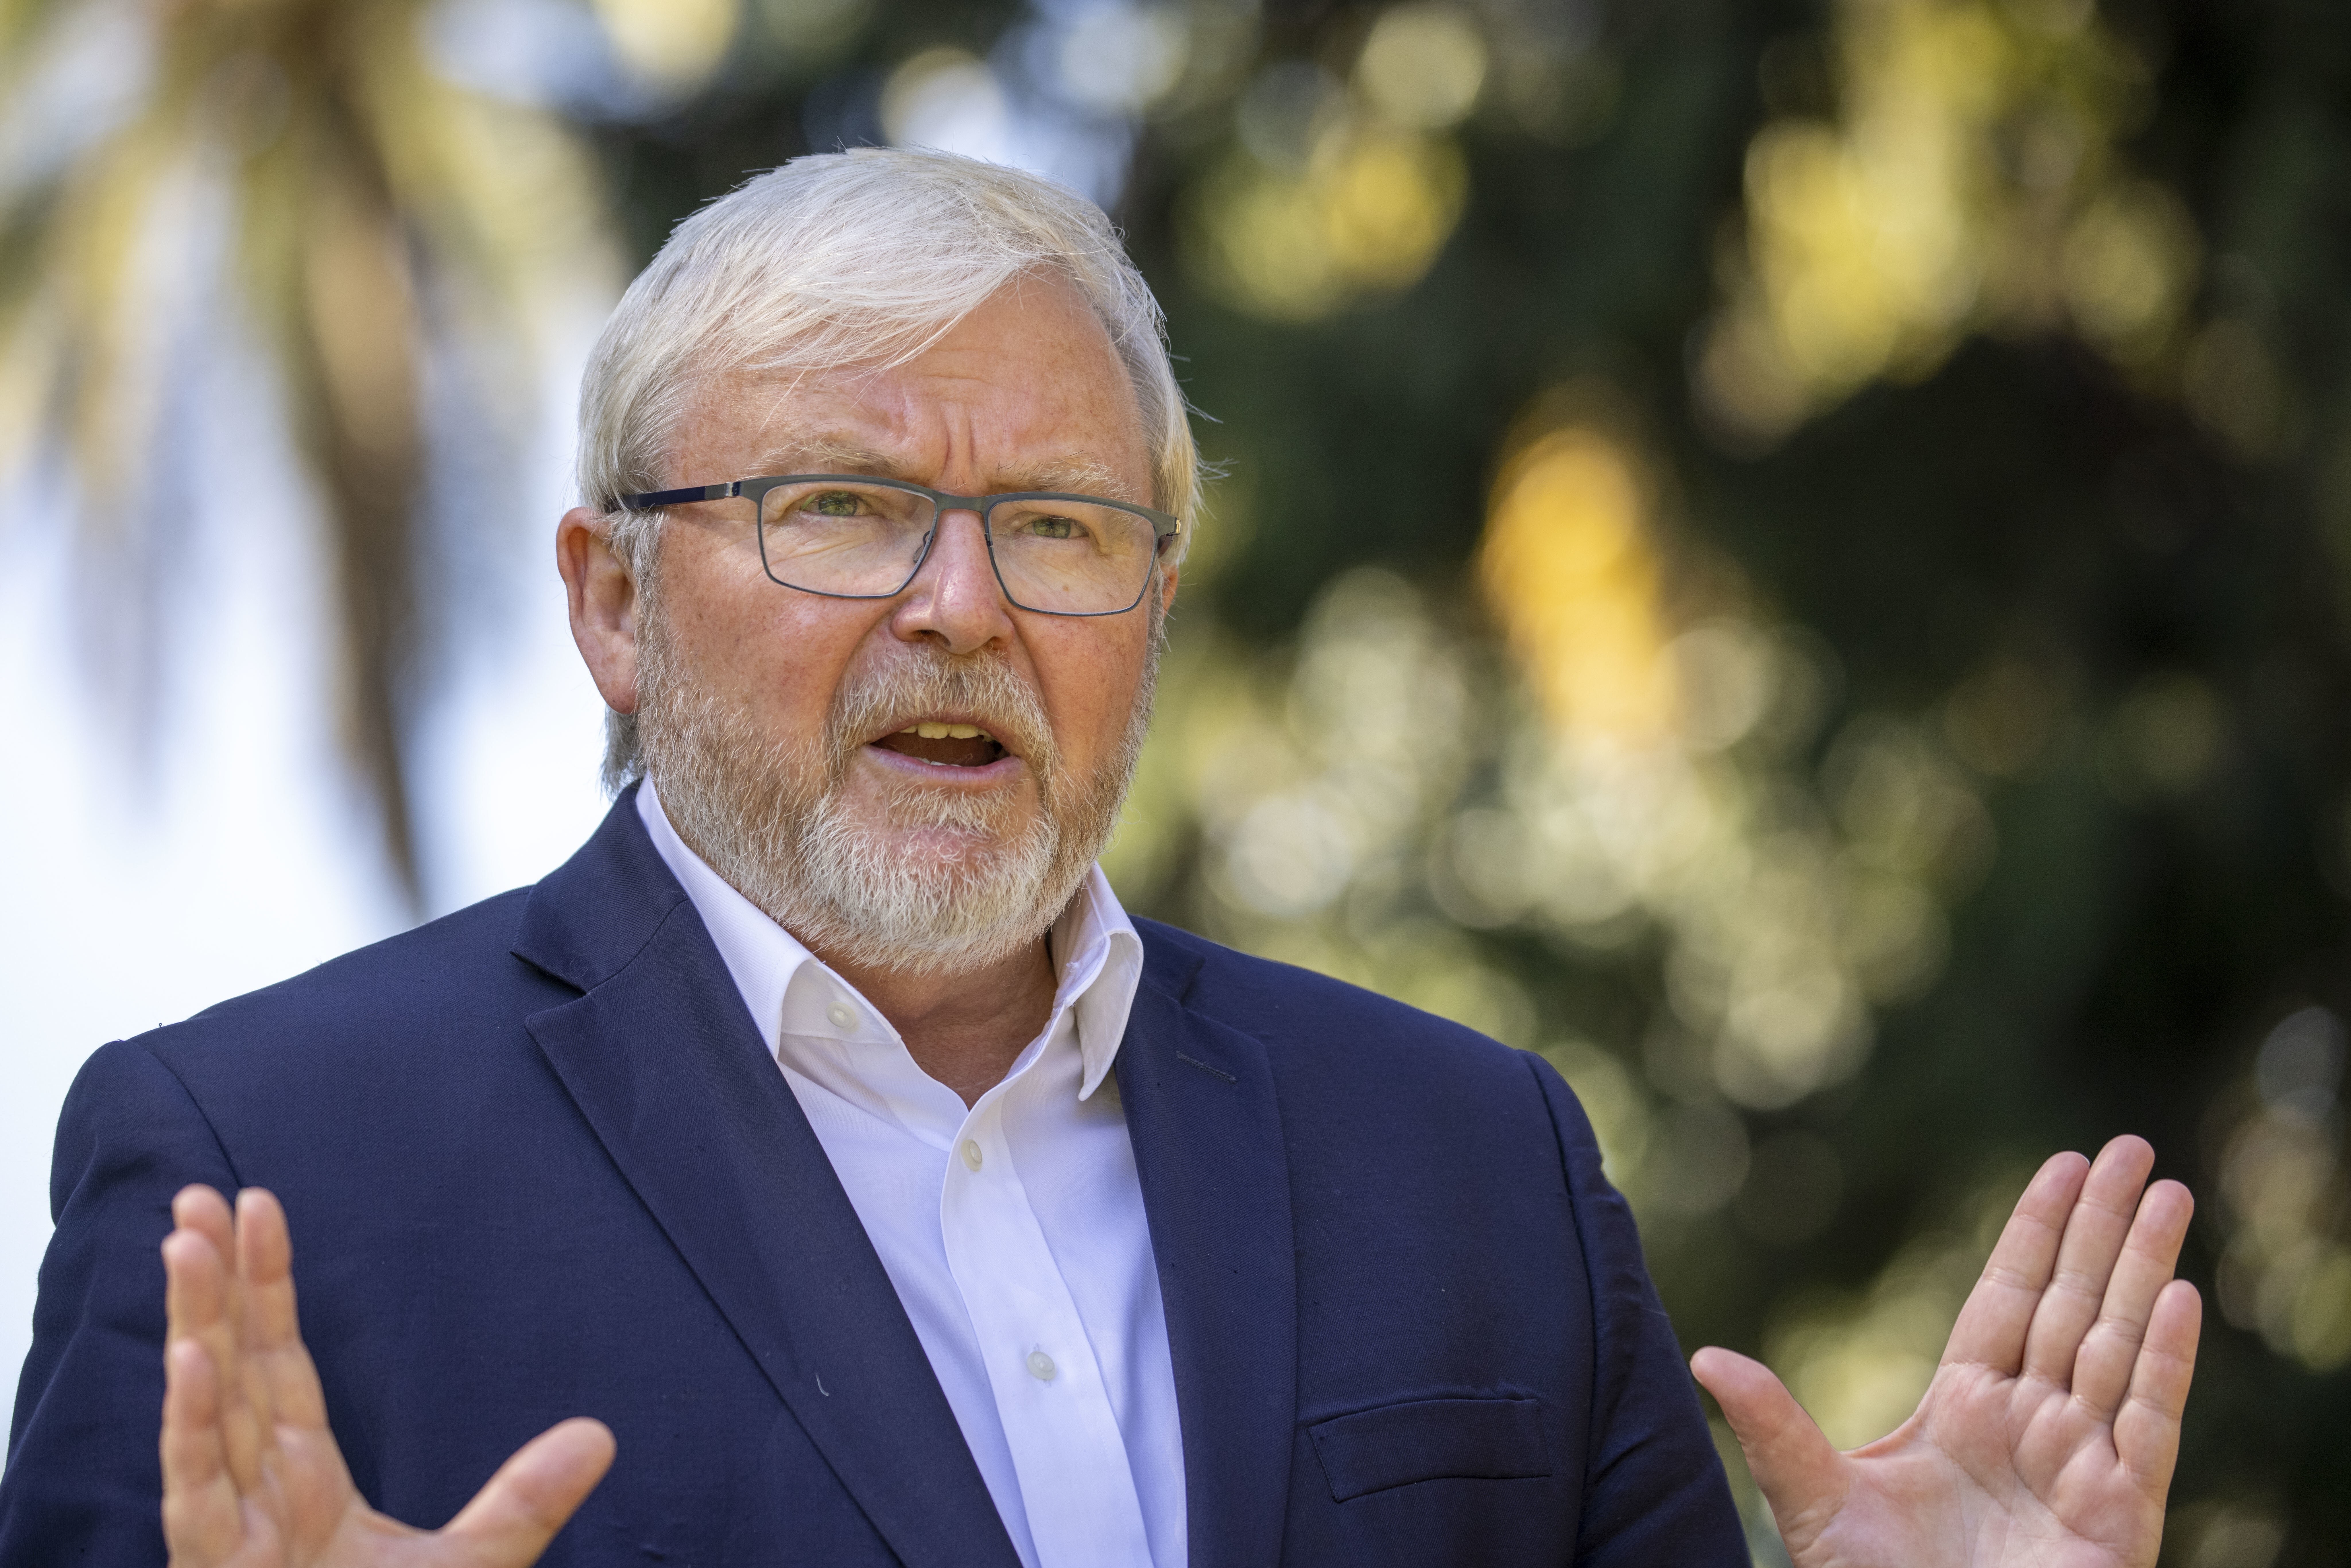 Former Australian prime minister Kevin Rudd. Photo: EPA-EFE